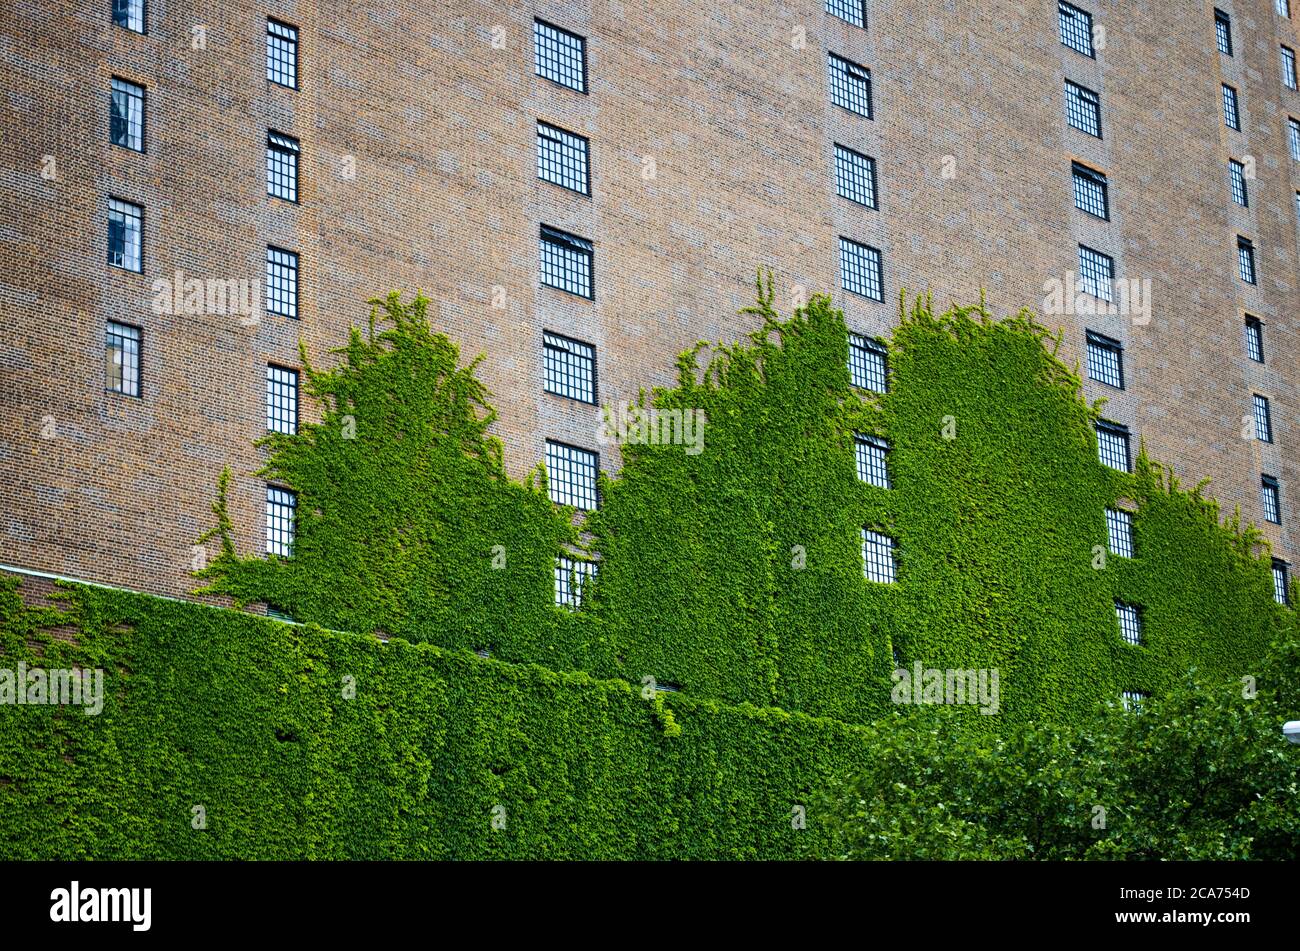 New York immeuble d'appartements en briques mur recouvert de vignes grimpantes vives Banque D'Images